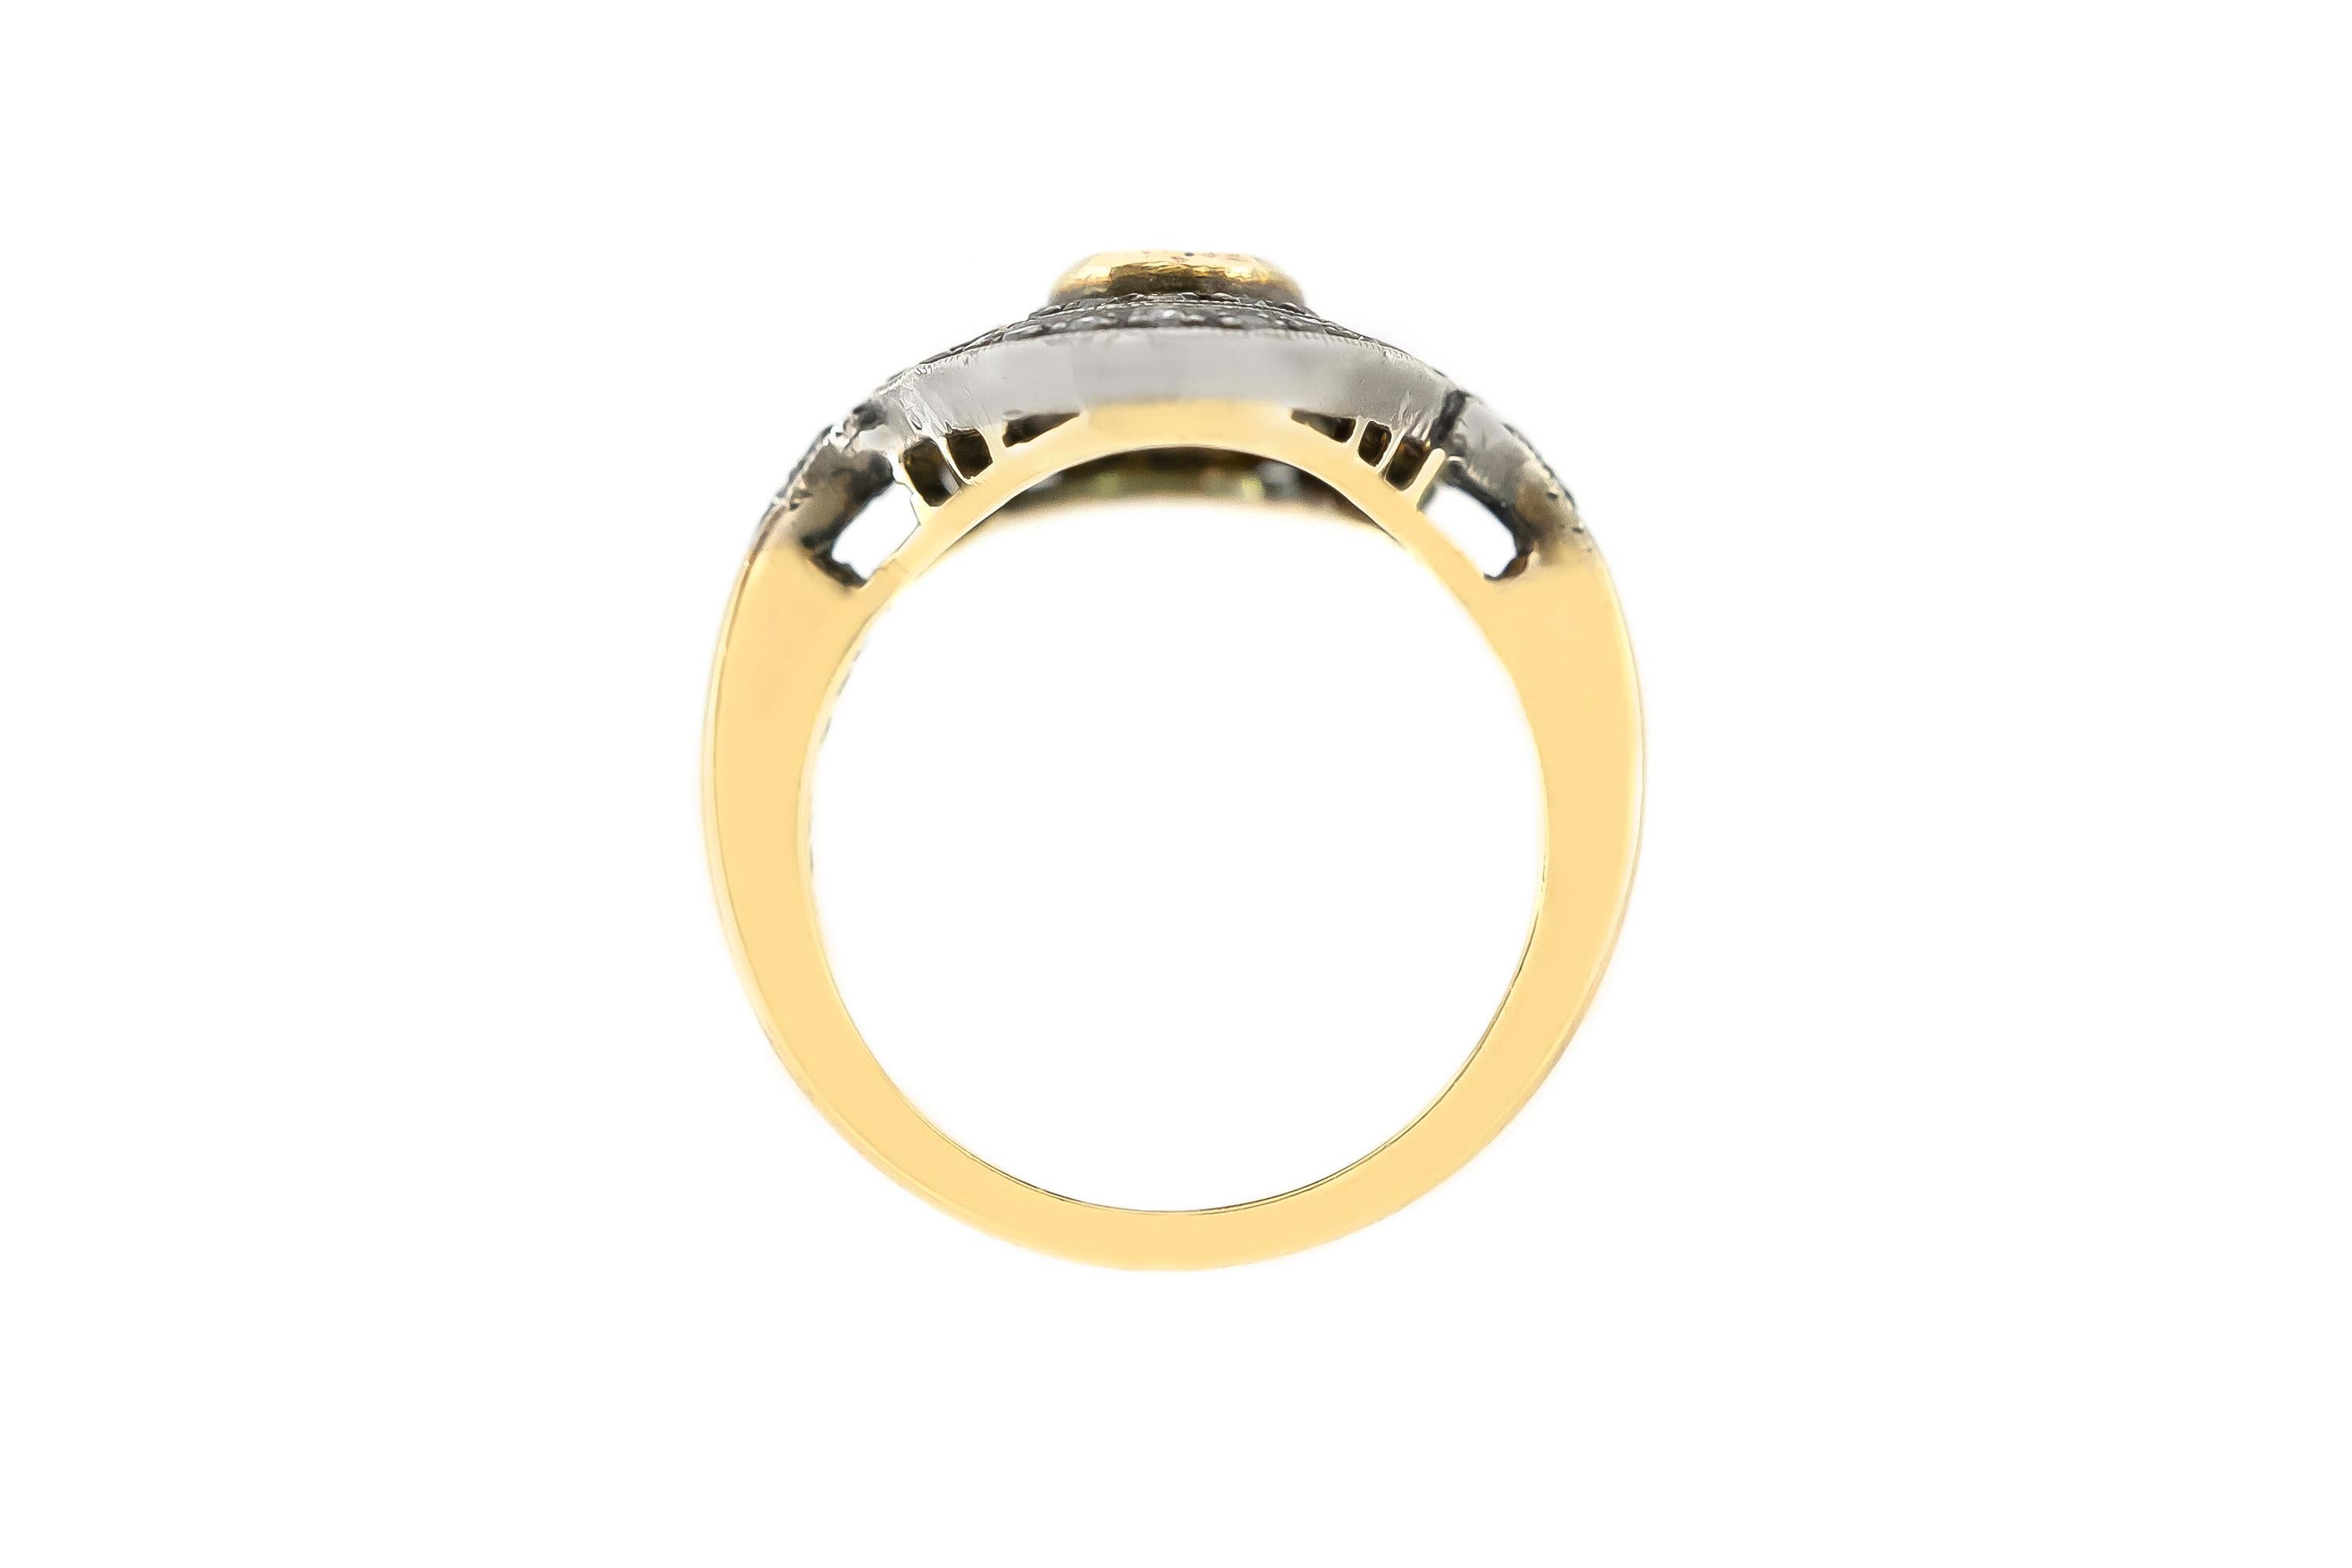 Der Ring ist fein in Handarbeit in 18k Gelbgold und Silber mit Mittelstein Rubin mit einem Gesamtgewicht von etwa 0,80 Karat und Diamanten.
(Der Schauplatz ist eine Nachbildung der 1860er Jahre).
